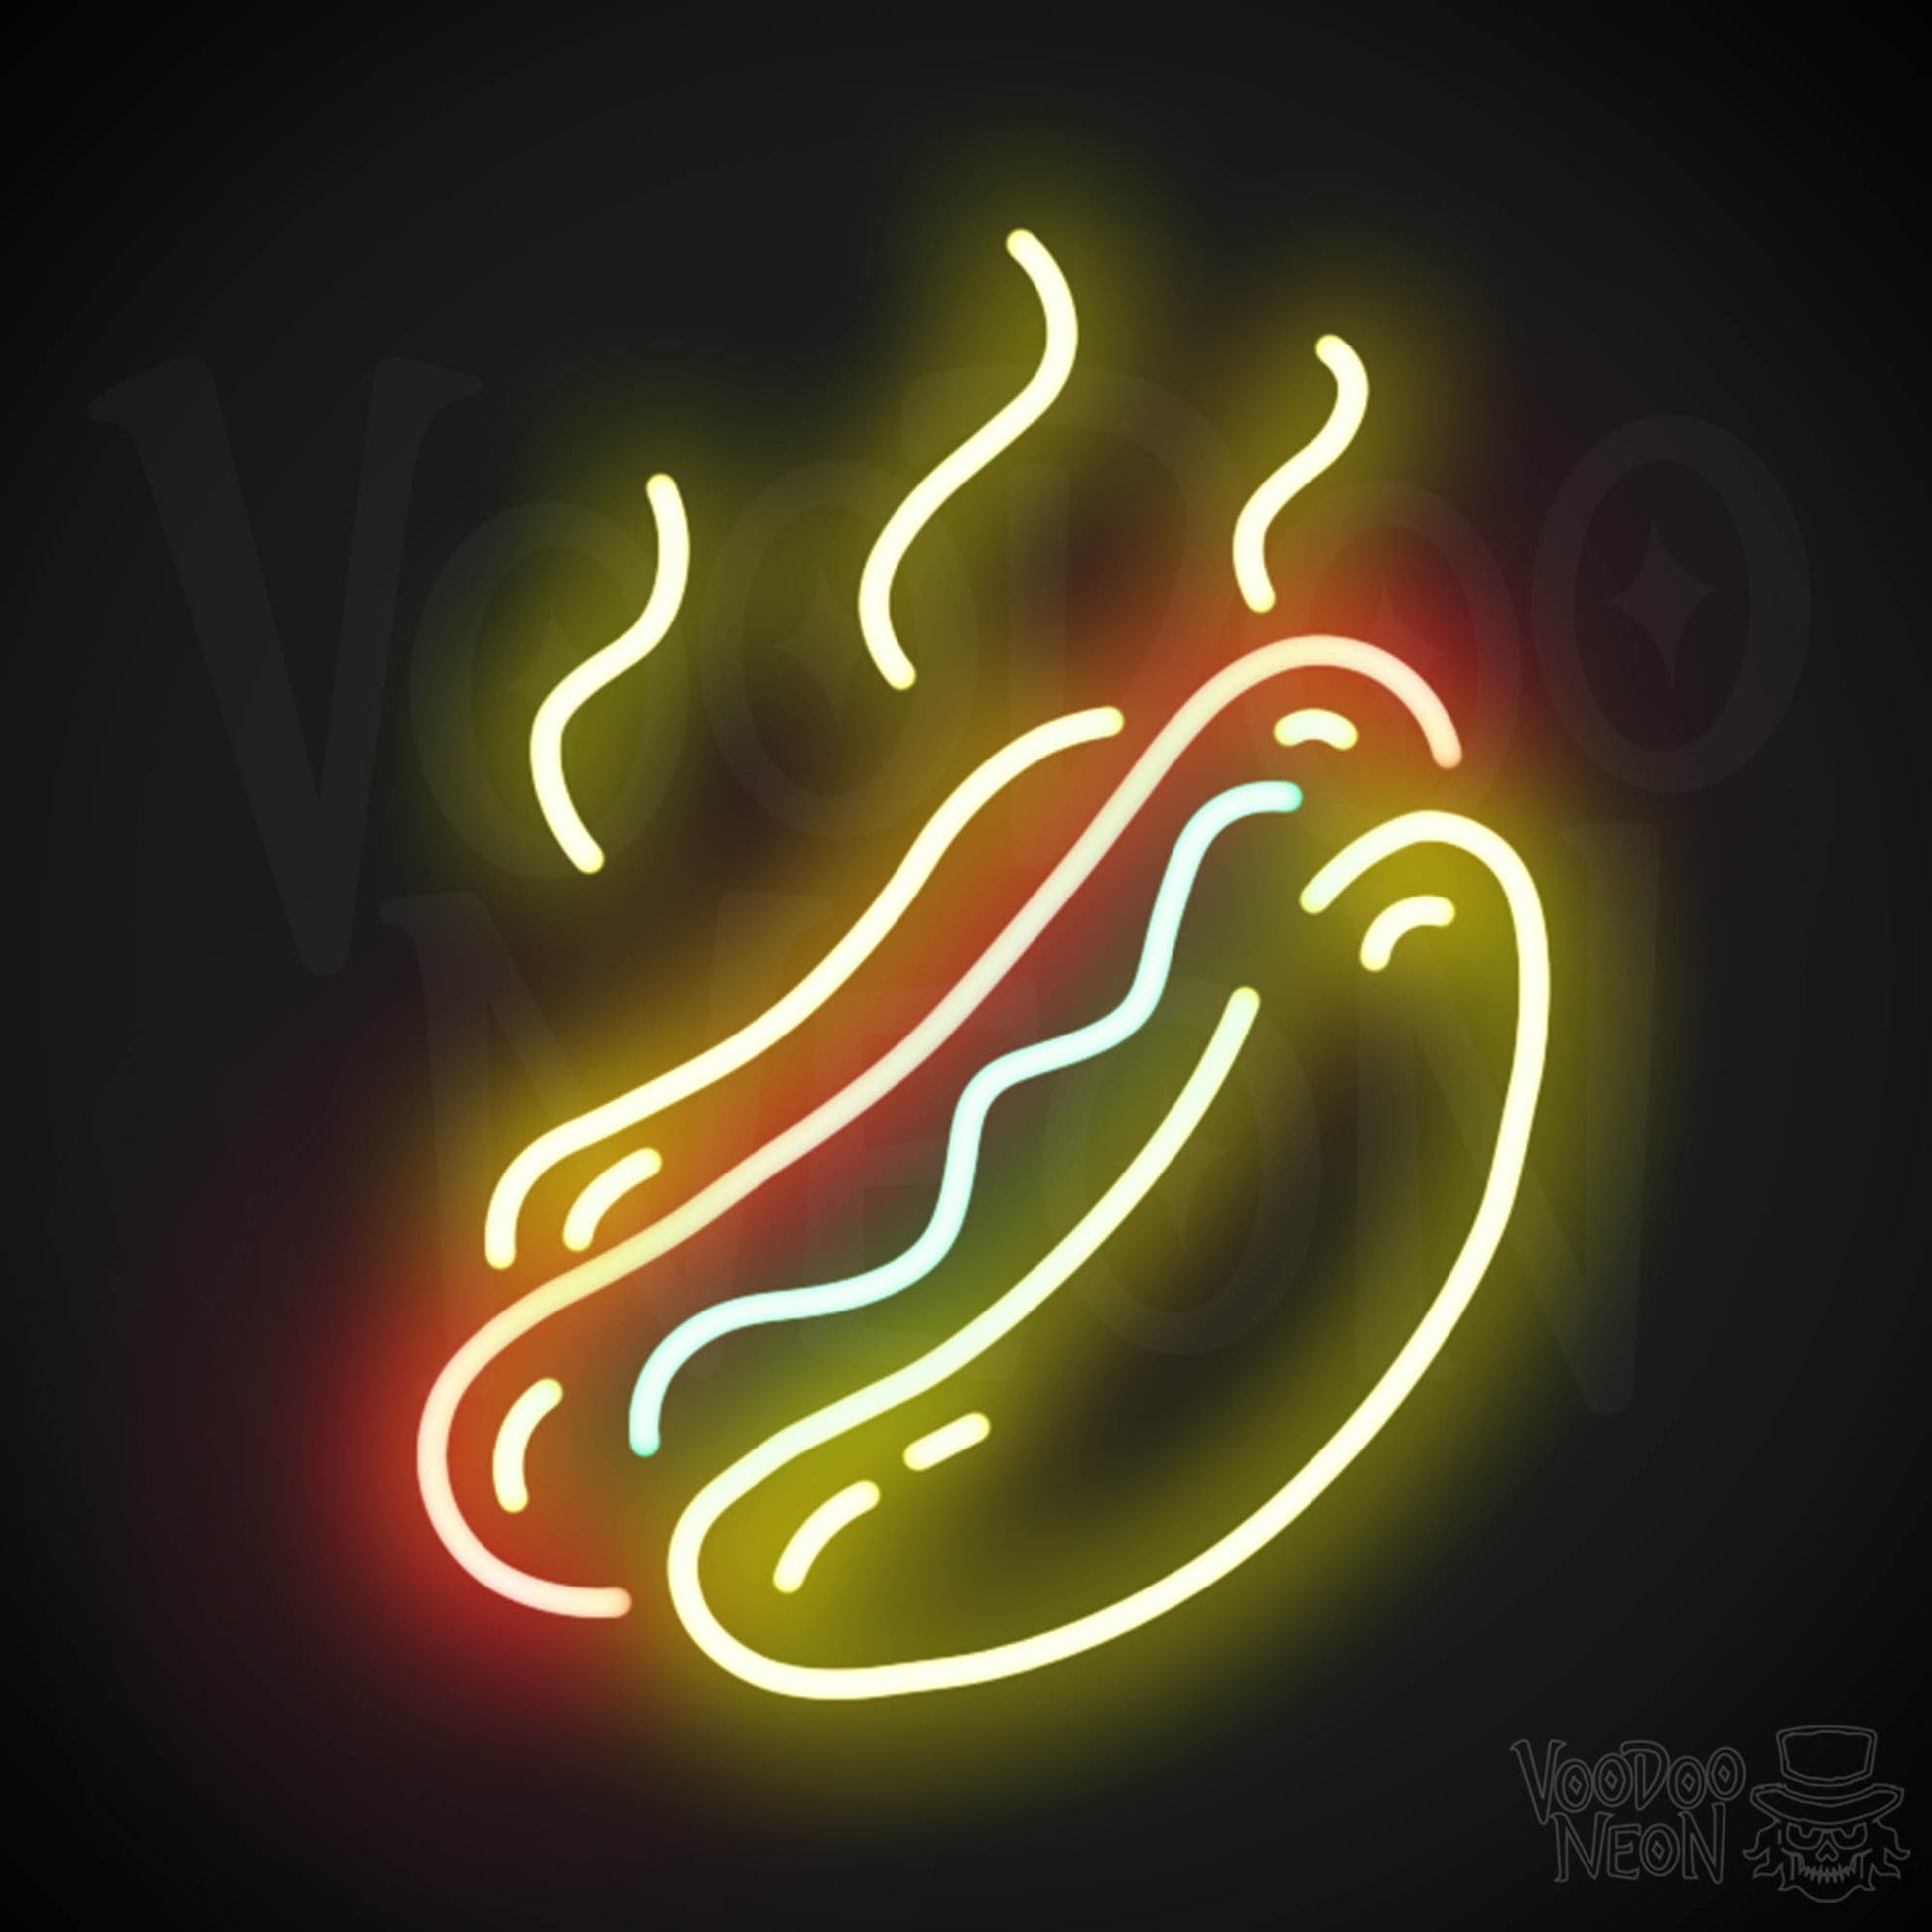 Hot Dogs Neon Sign - Neon Hot Dogs Sign - Hot Dog Wall Art - Color Multi-Color